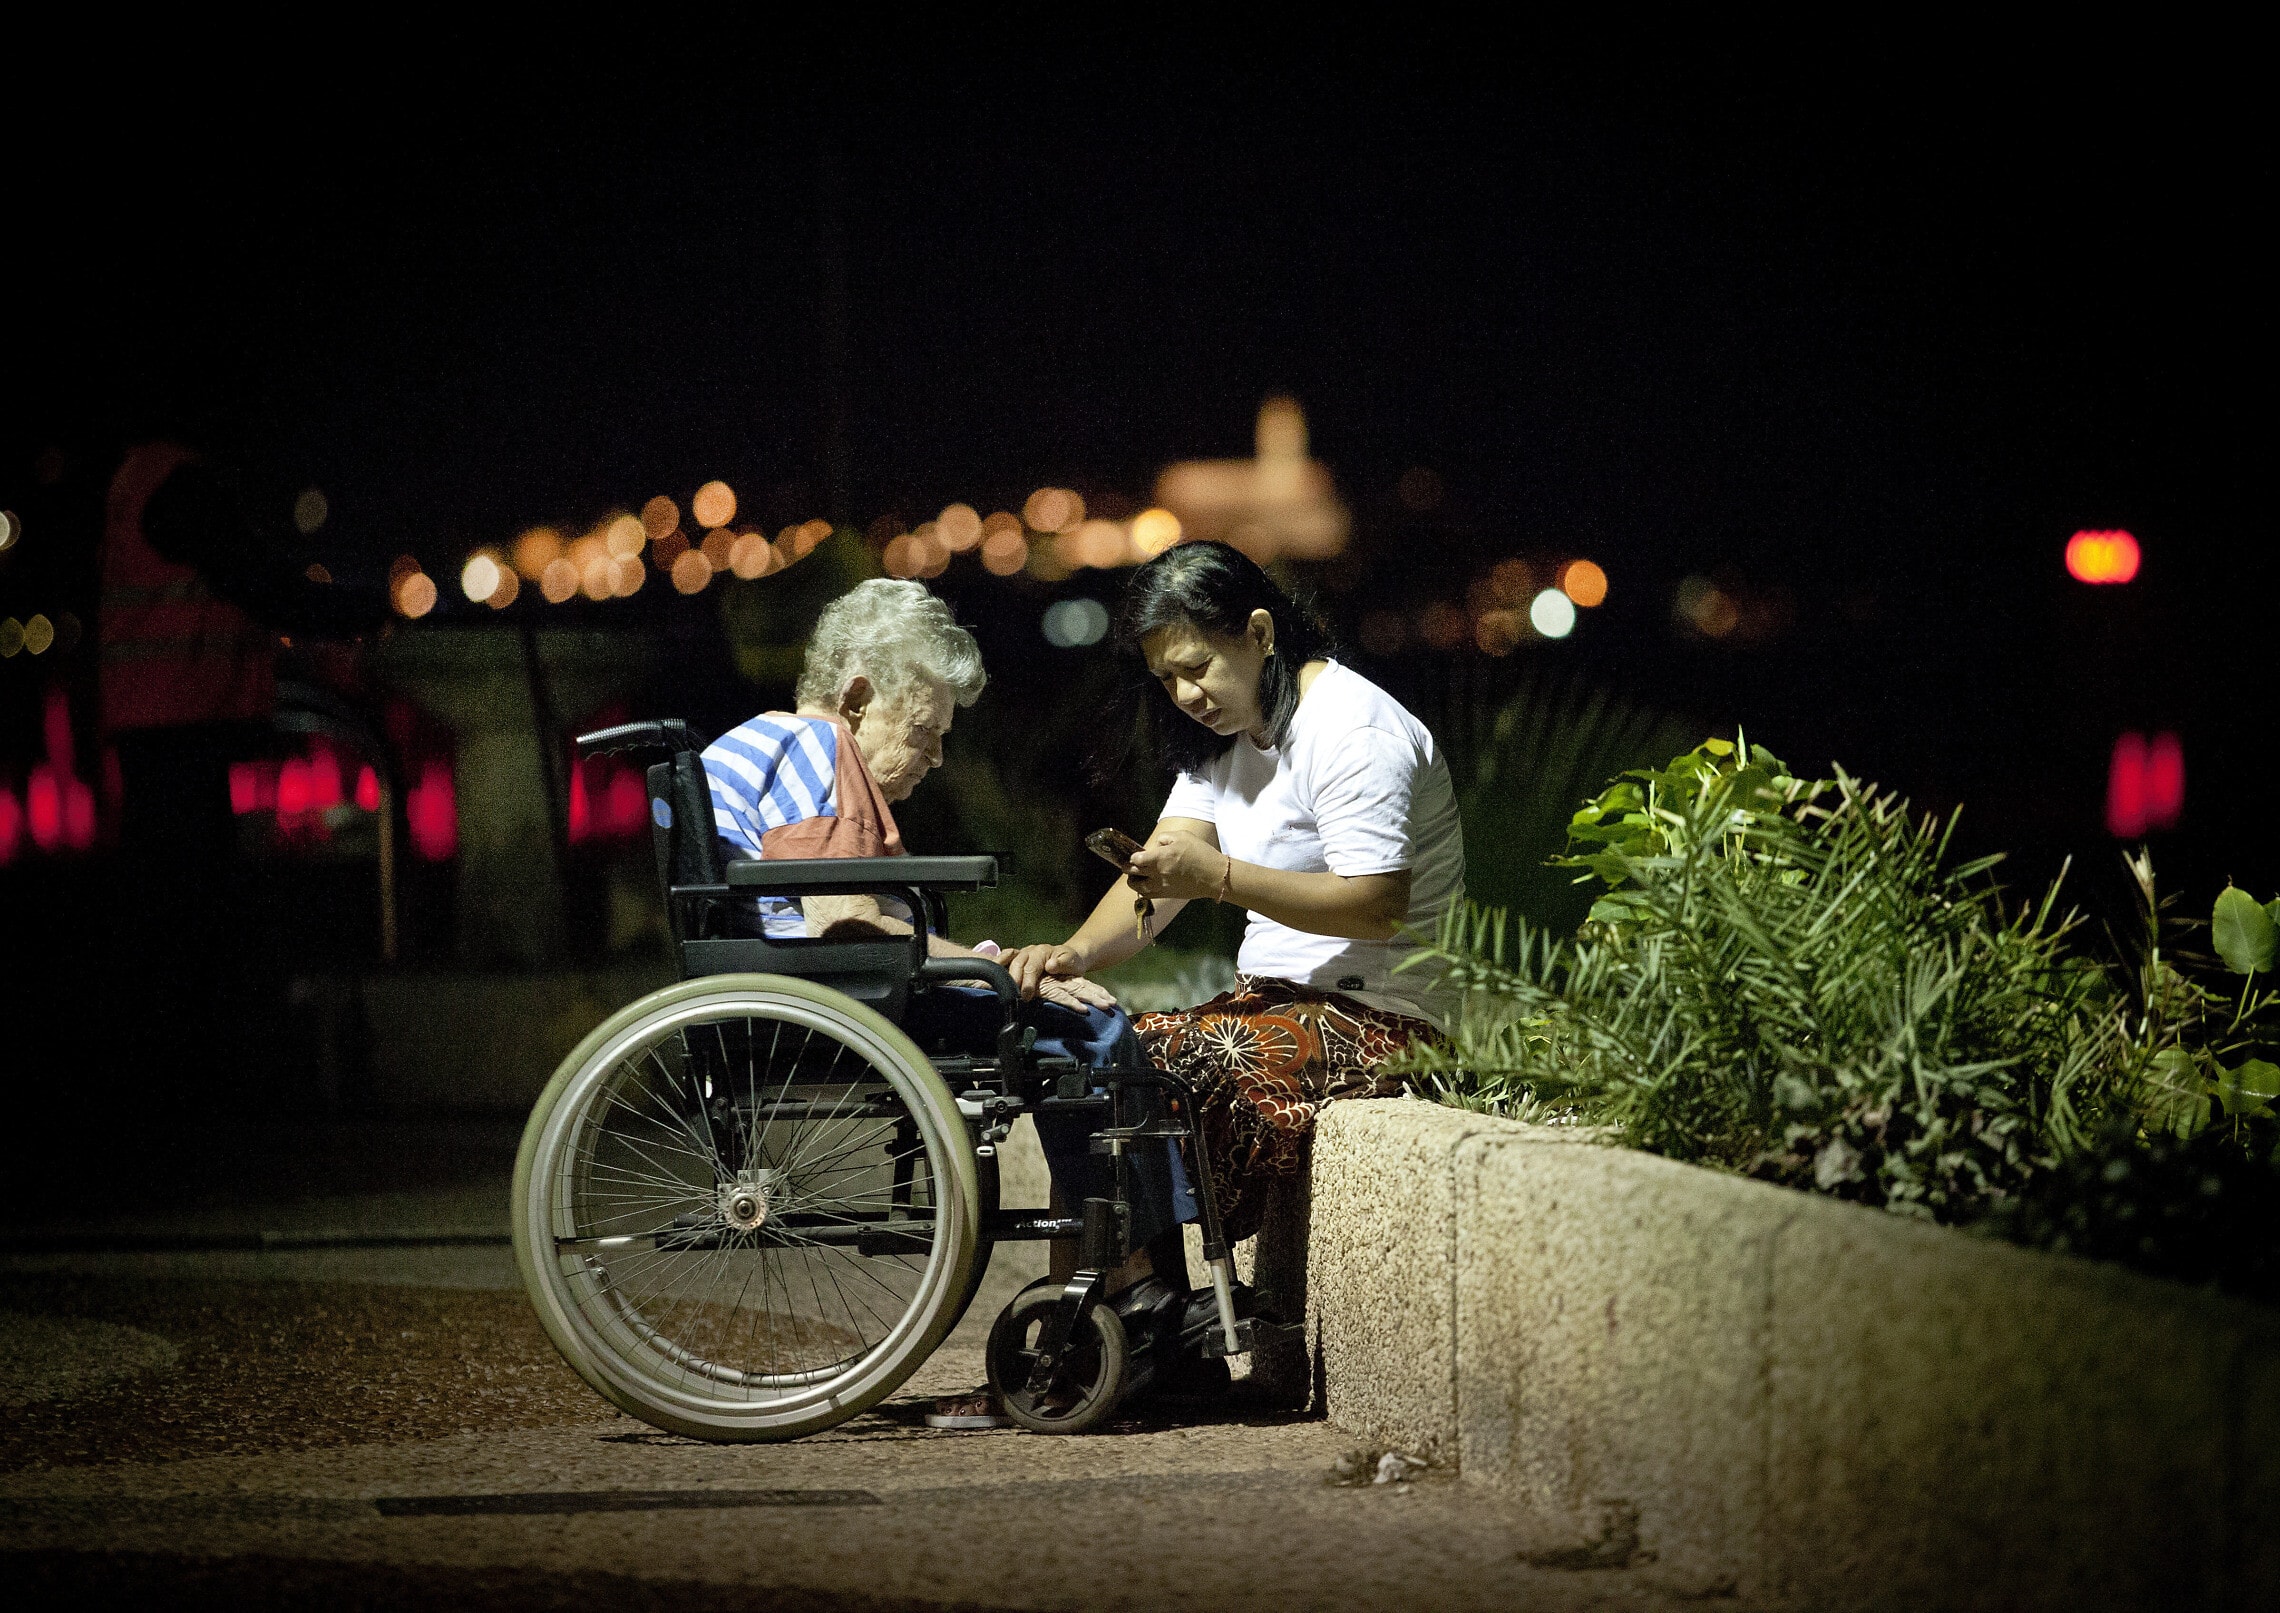 אילוסטרציה: מטפלת פיליפינית עם קשישה ישראלית בטיילת של תל אביב (צילום: Moshe Shai/FLASH90)